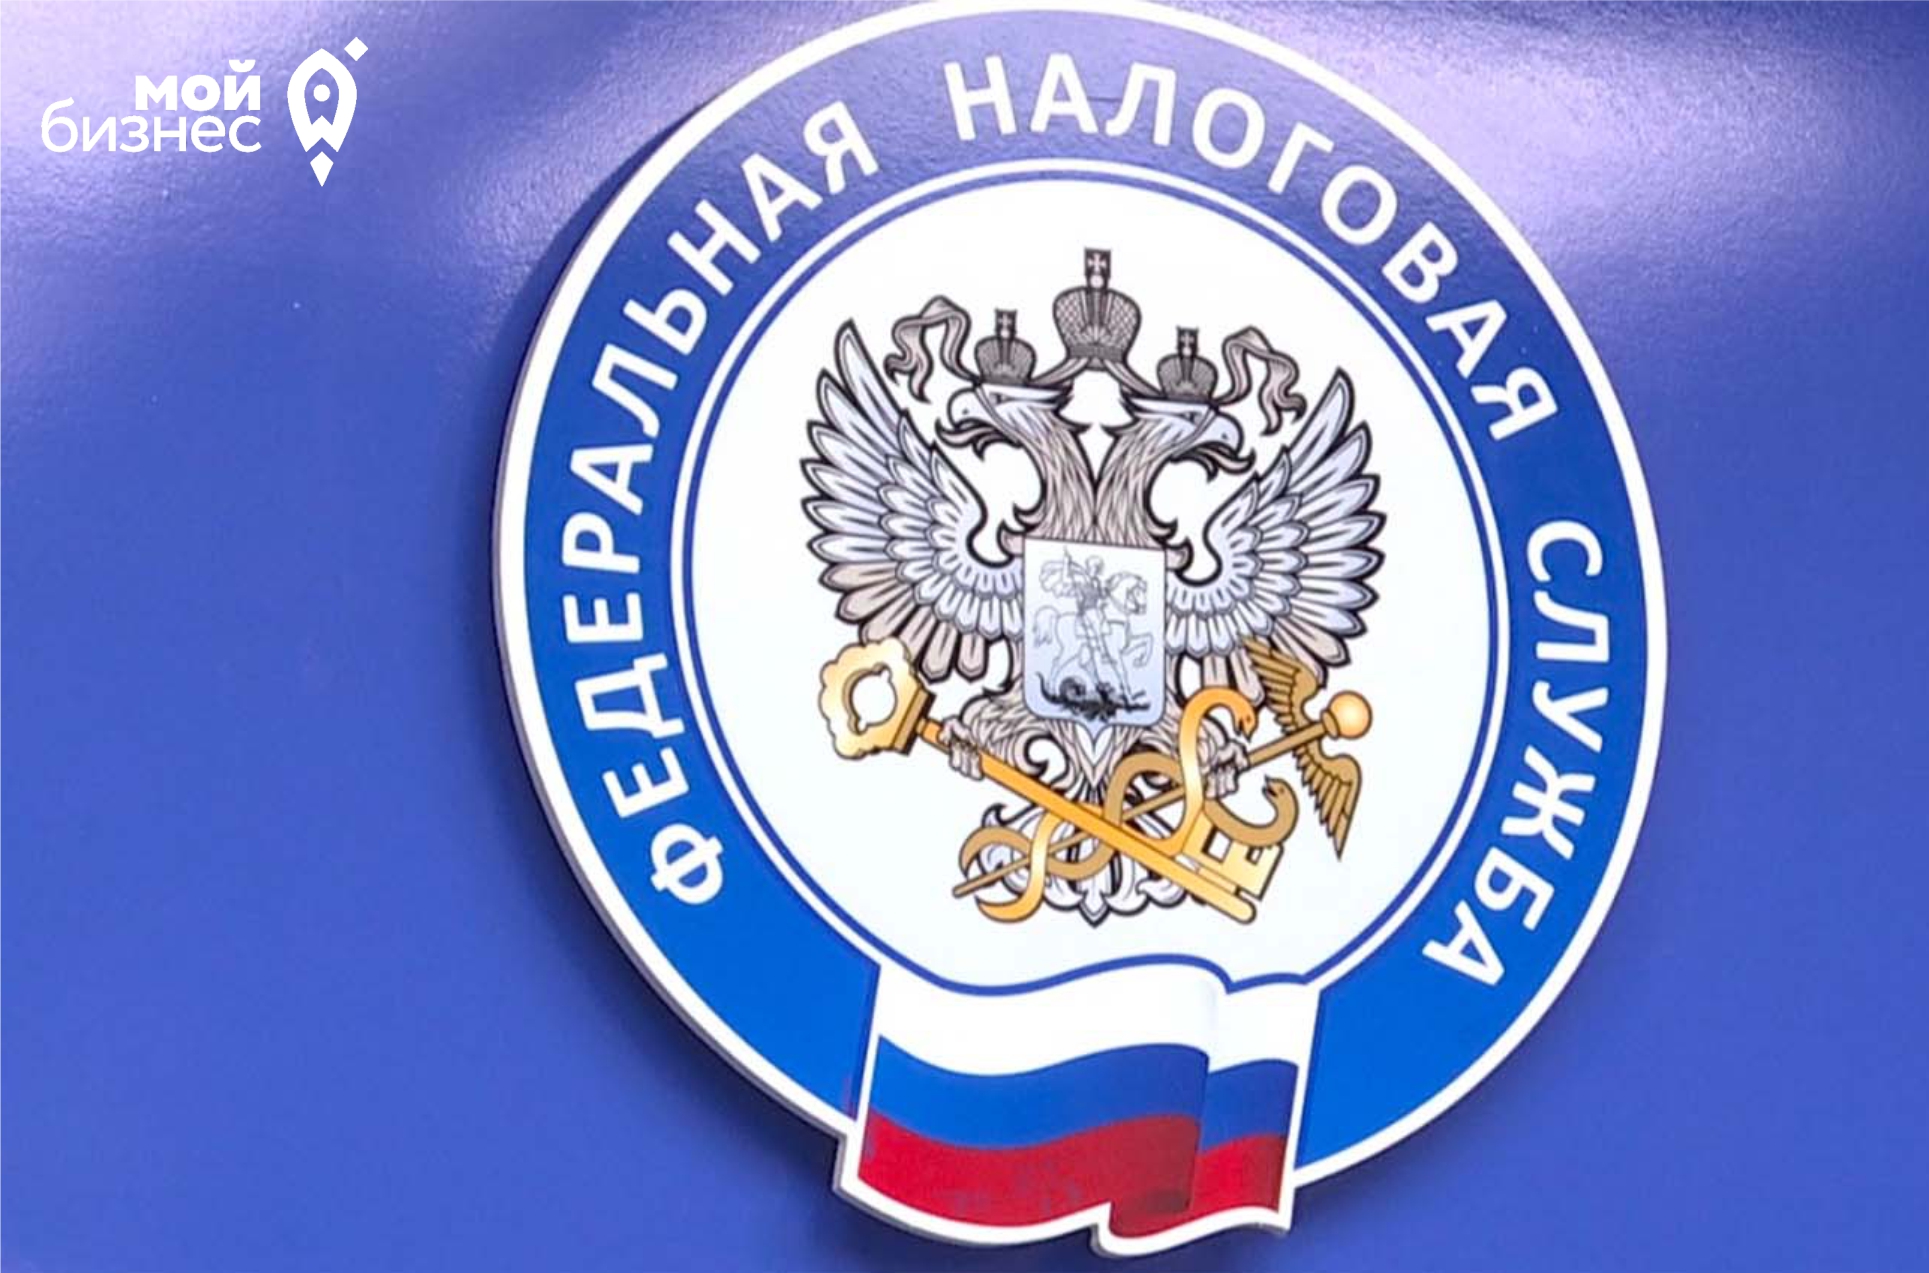 Через какие сервисы ФНС России граждане могут оплачивать налоги онлайн